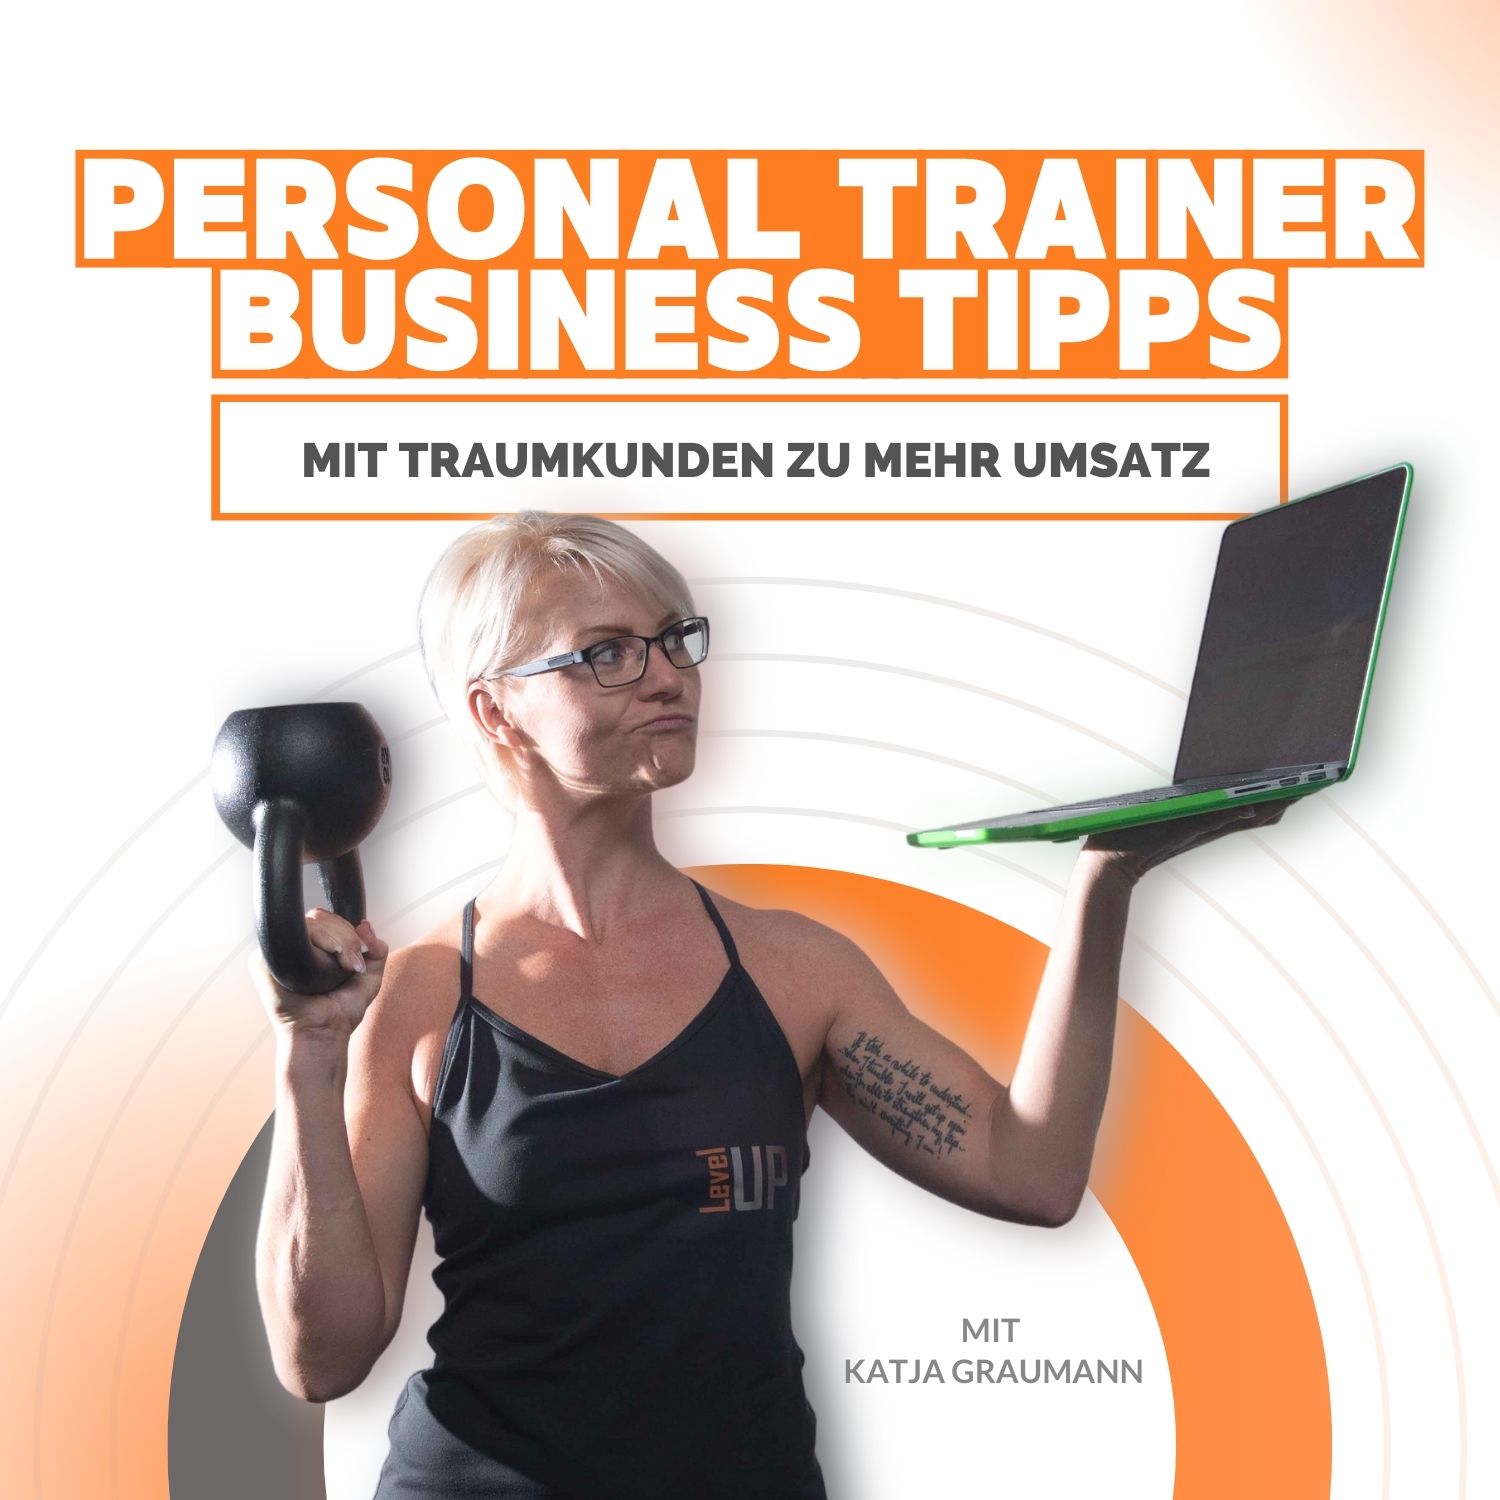 Personal Trainer Business Tipps für deinen Erfolg im Personal Training